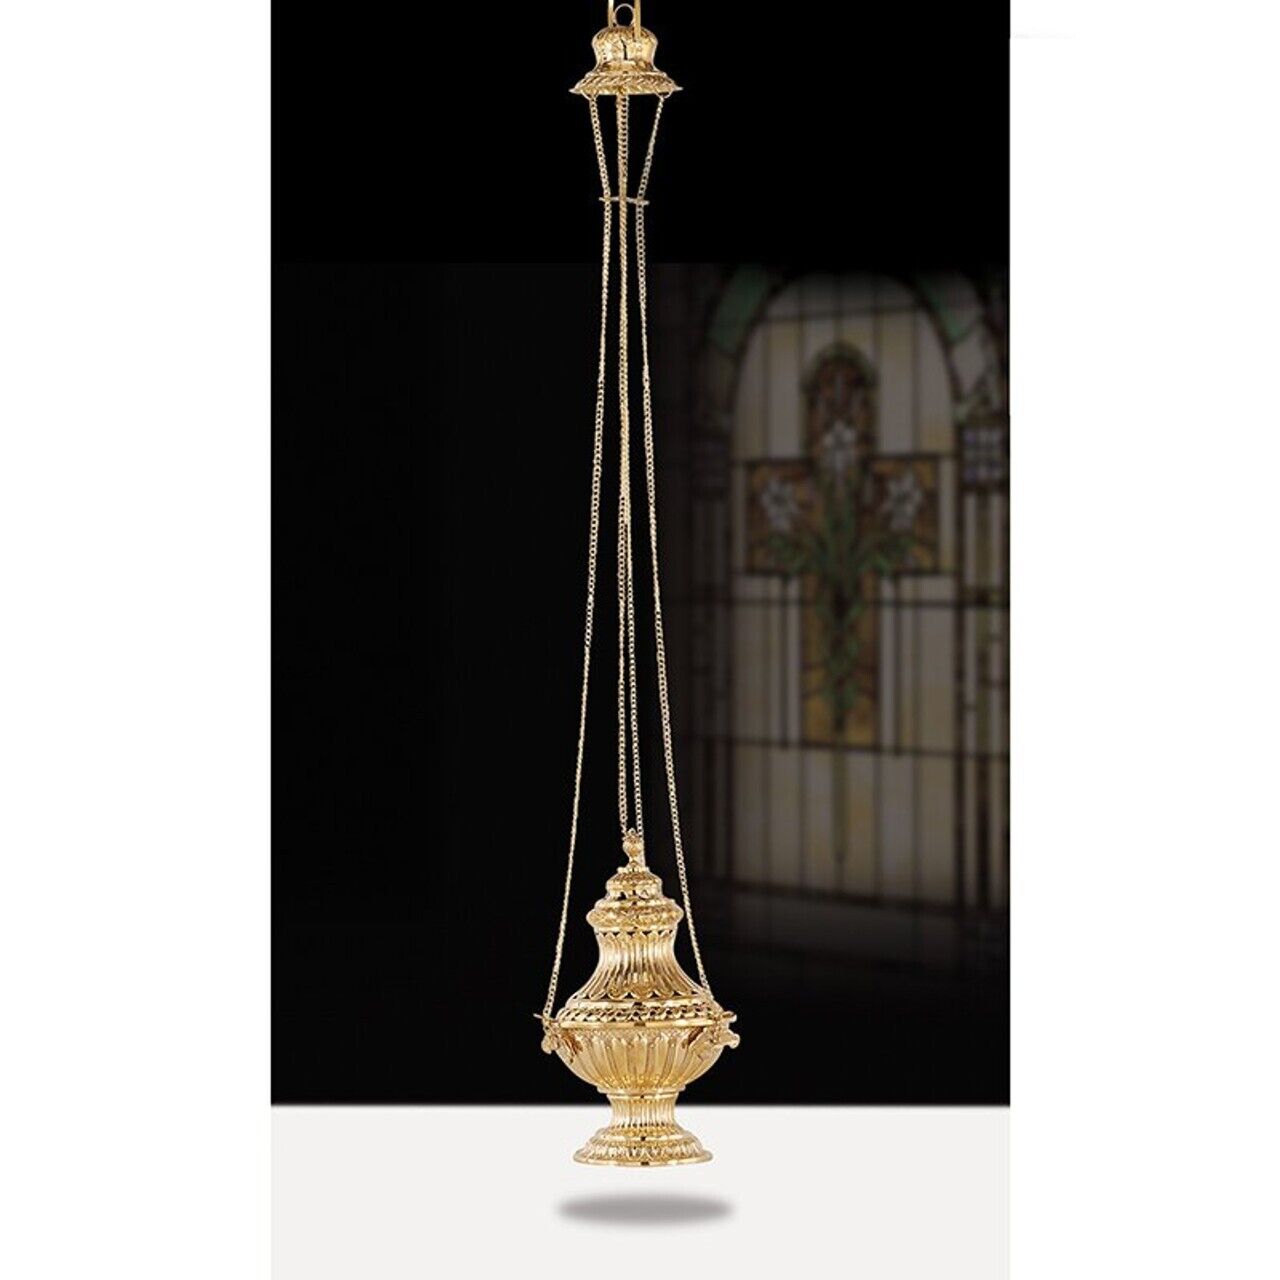 Large Ornate Design Hanging Censer Incense Burner For Church or Sanctuary 13 In